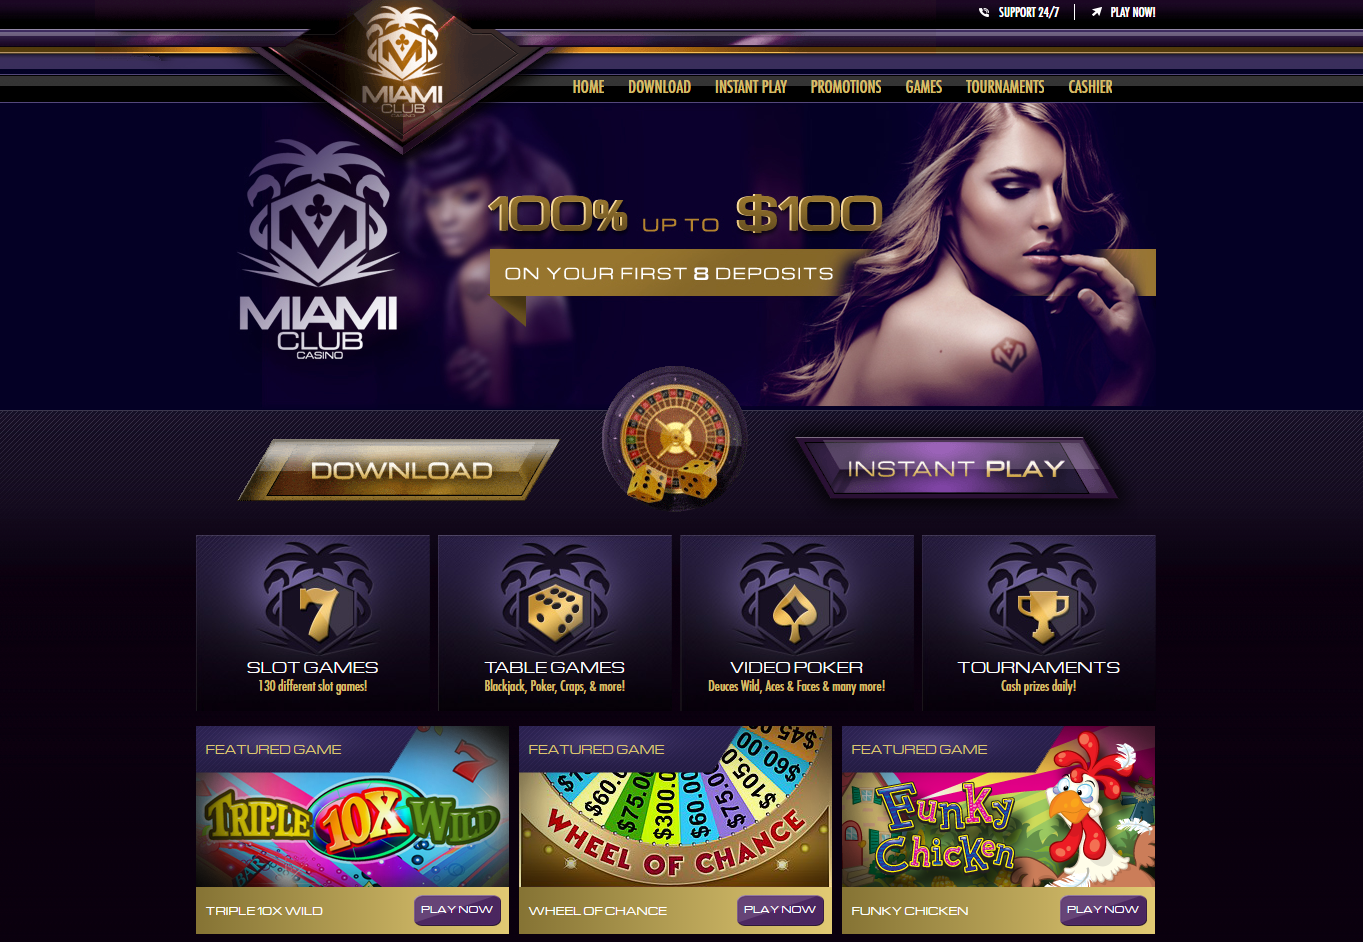 New casino no deposit bonus codes